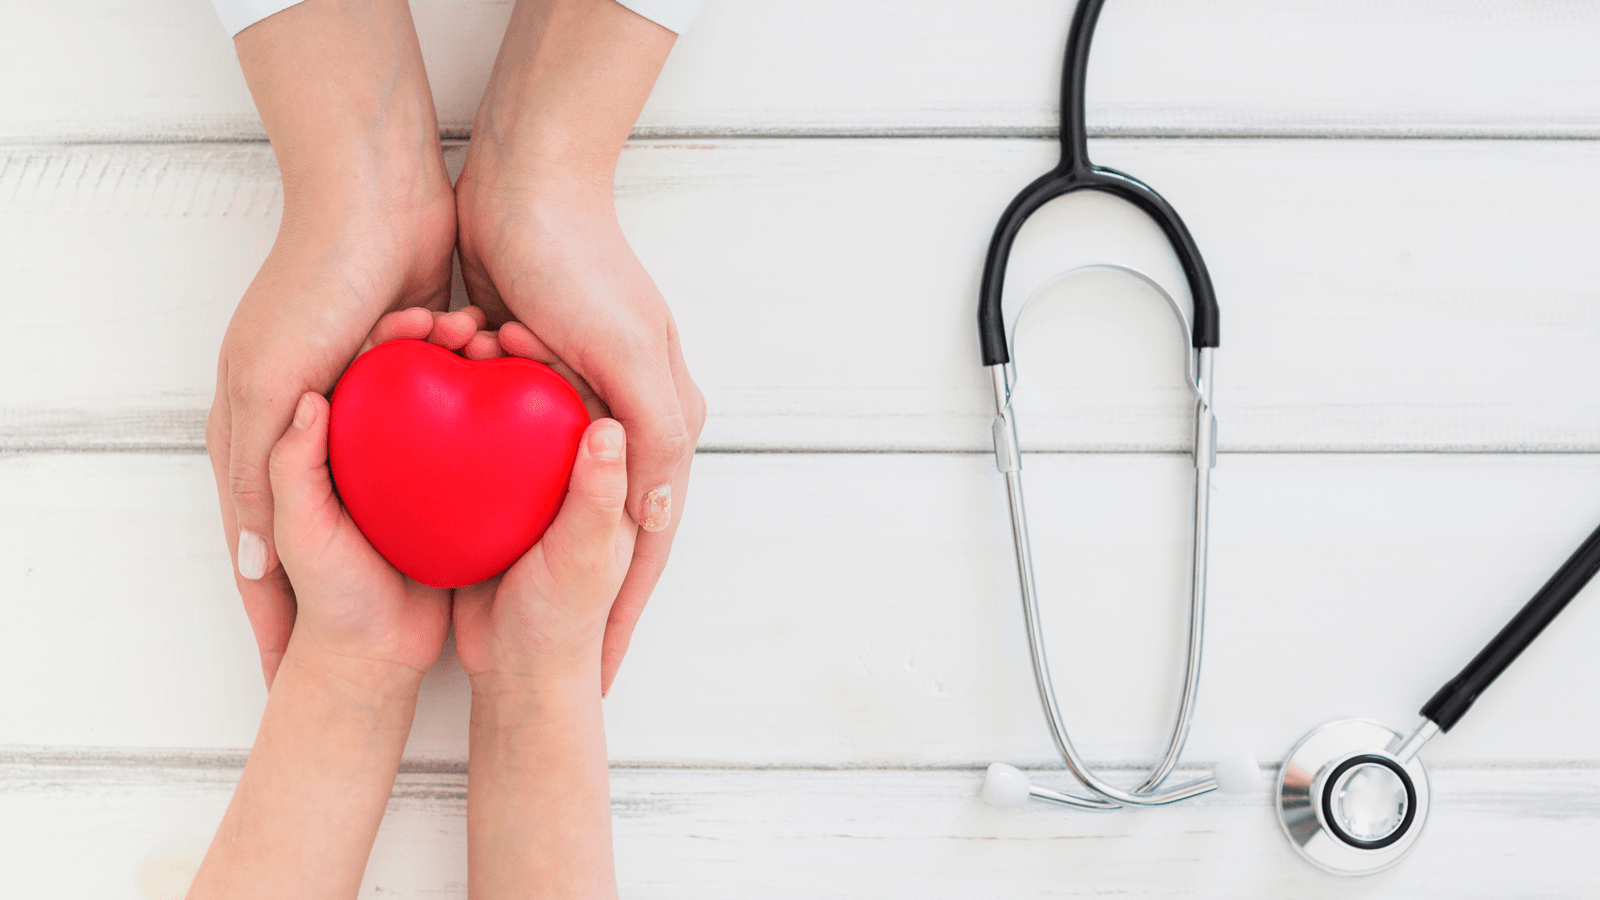 Ở nước ta, số người mắc bệnh tim mạch và đột quỵ hàng năm ngày càng tăng. Tuy nhiên, việc phát hiện, phòng ngừa và giảm tối đa những biến chứng nguy hiểm là điều hoàn toàn có thể chỉ bằng cách khám tim mạch định kỳ hàng năm.